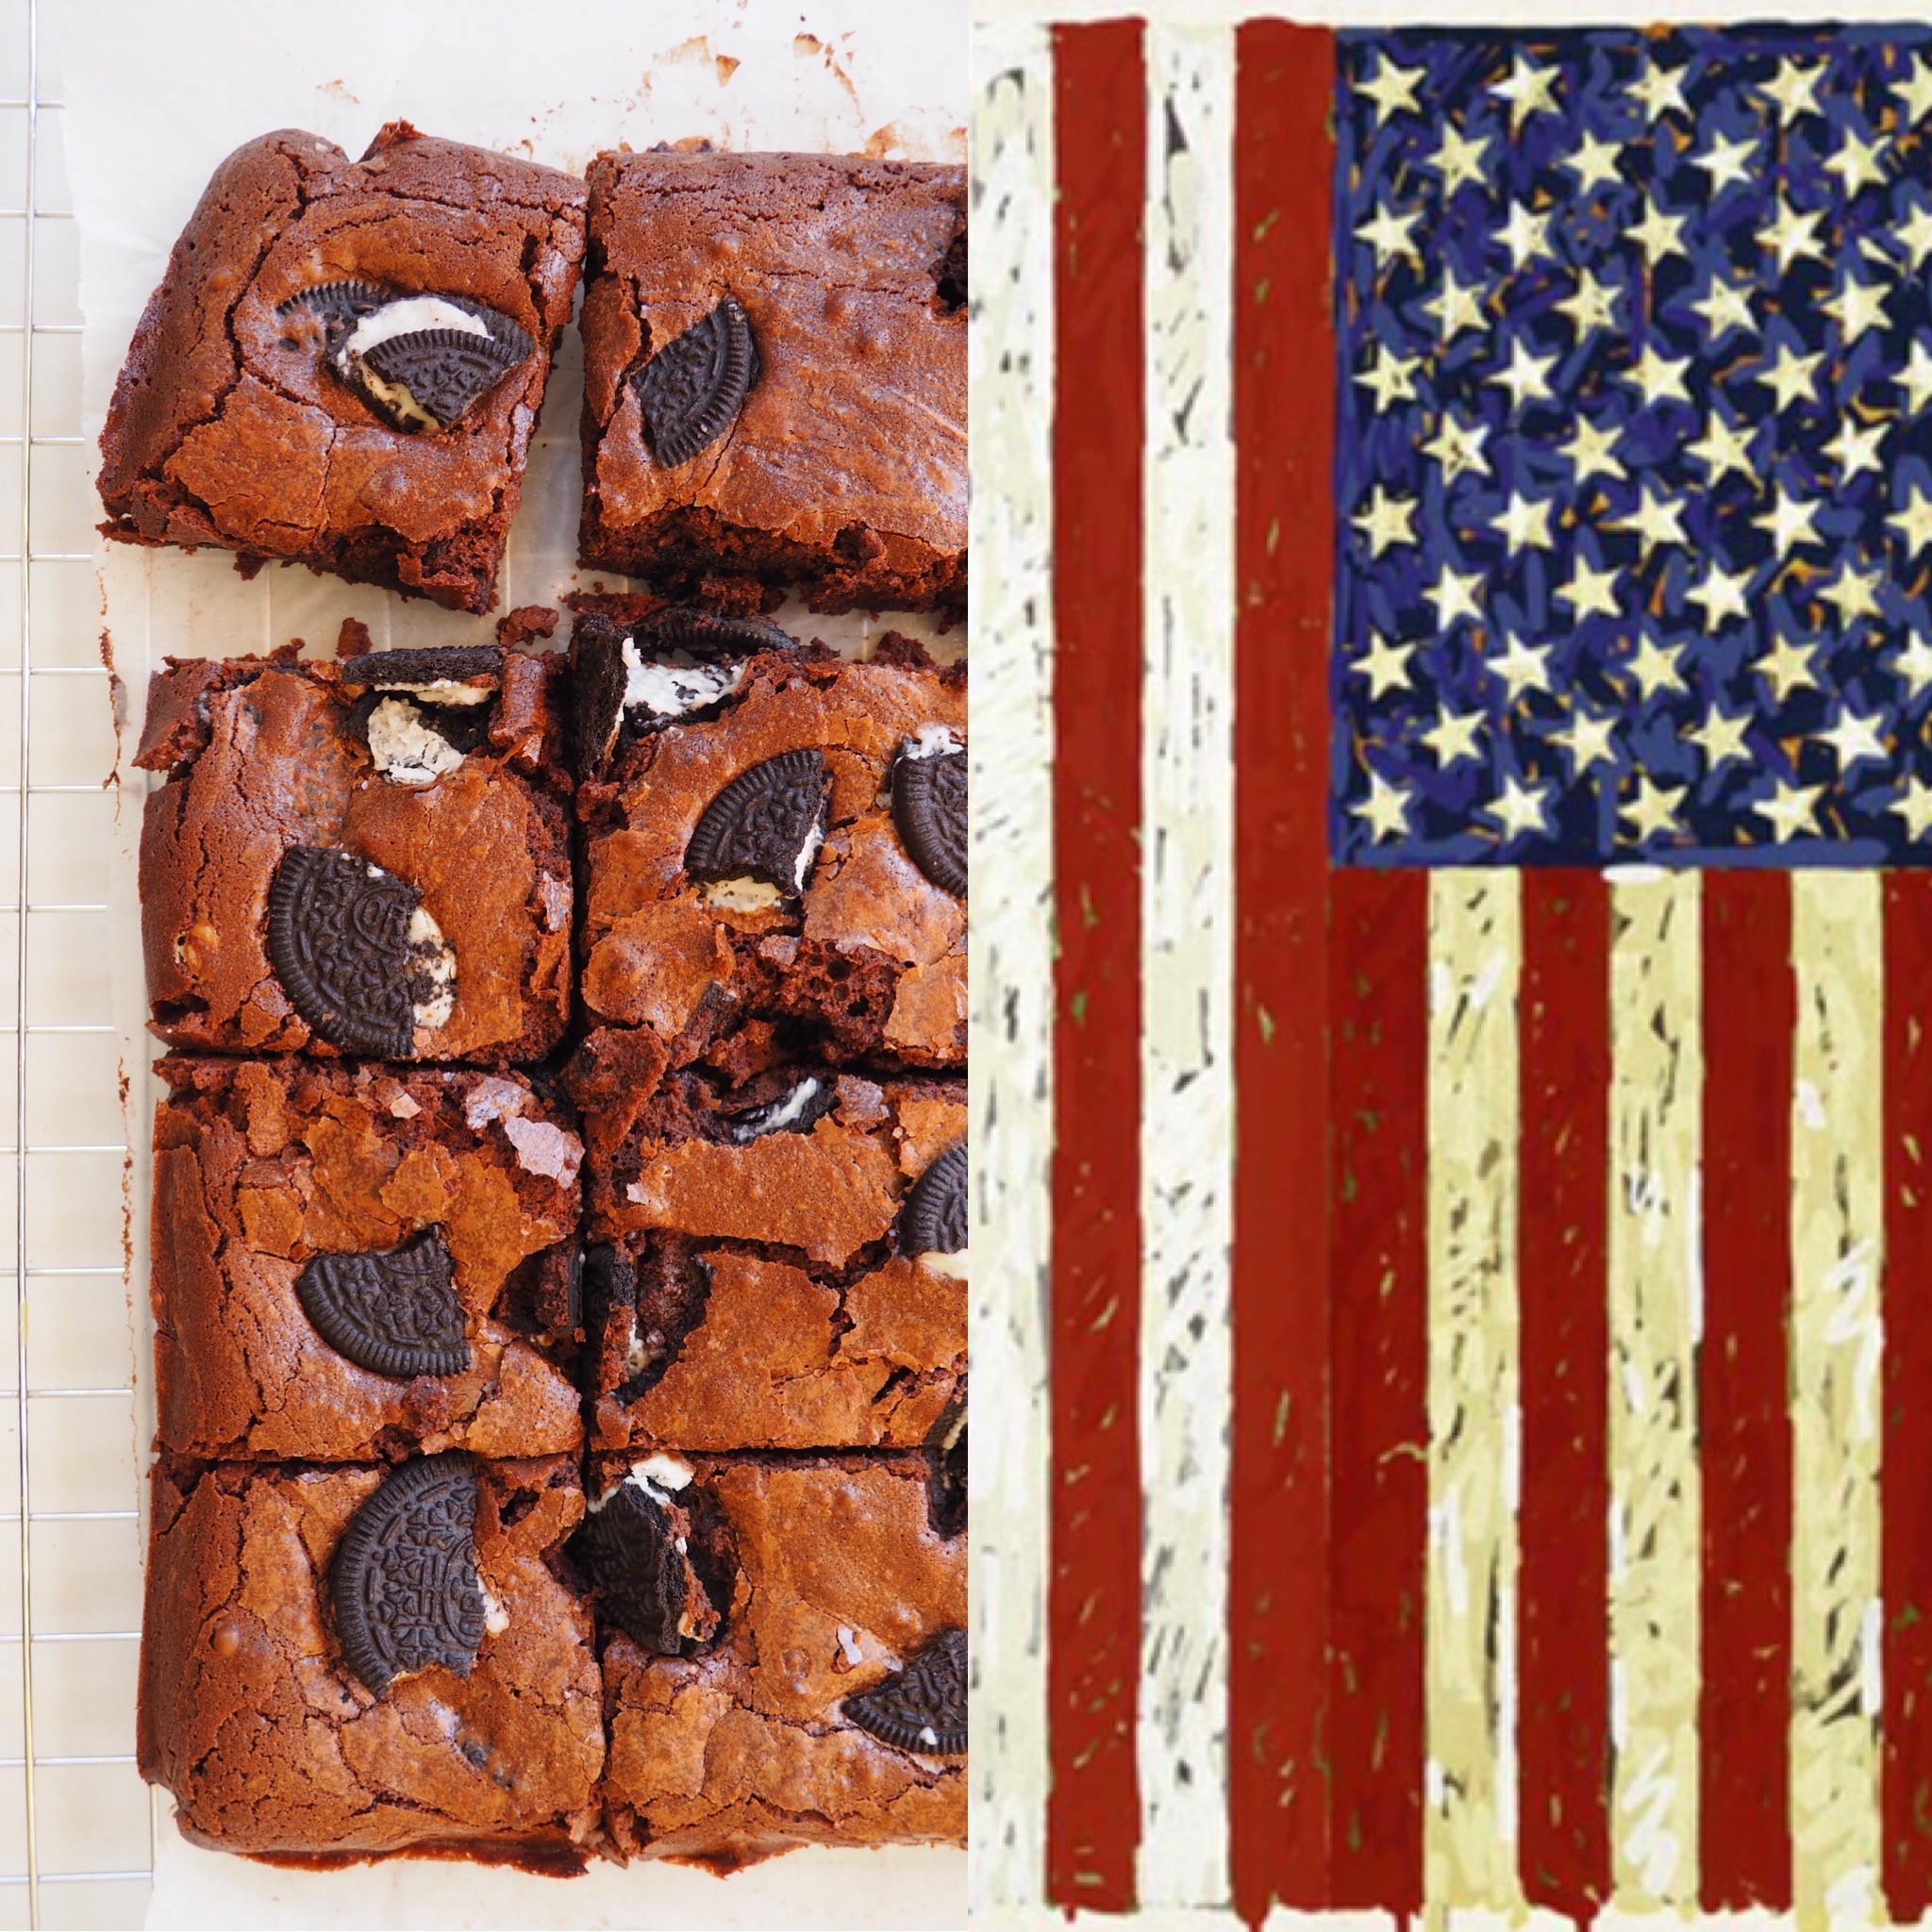 Jasper Johns, las banderas y el brownie de Oreo